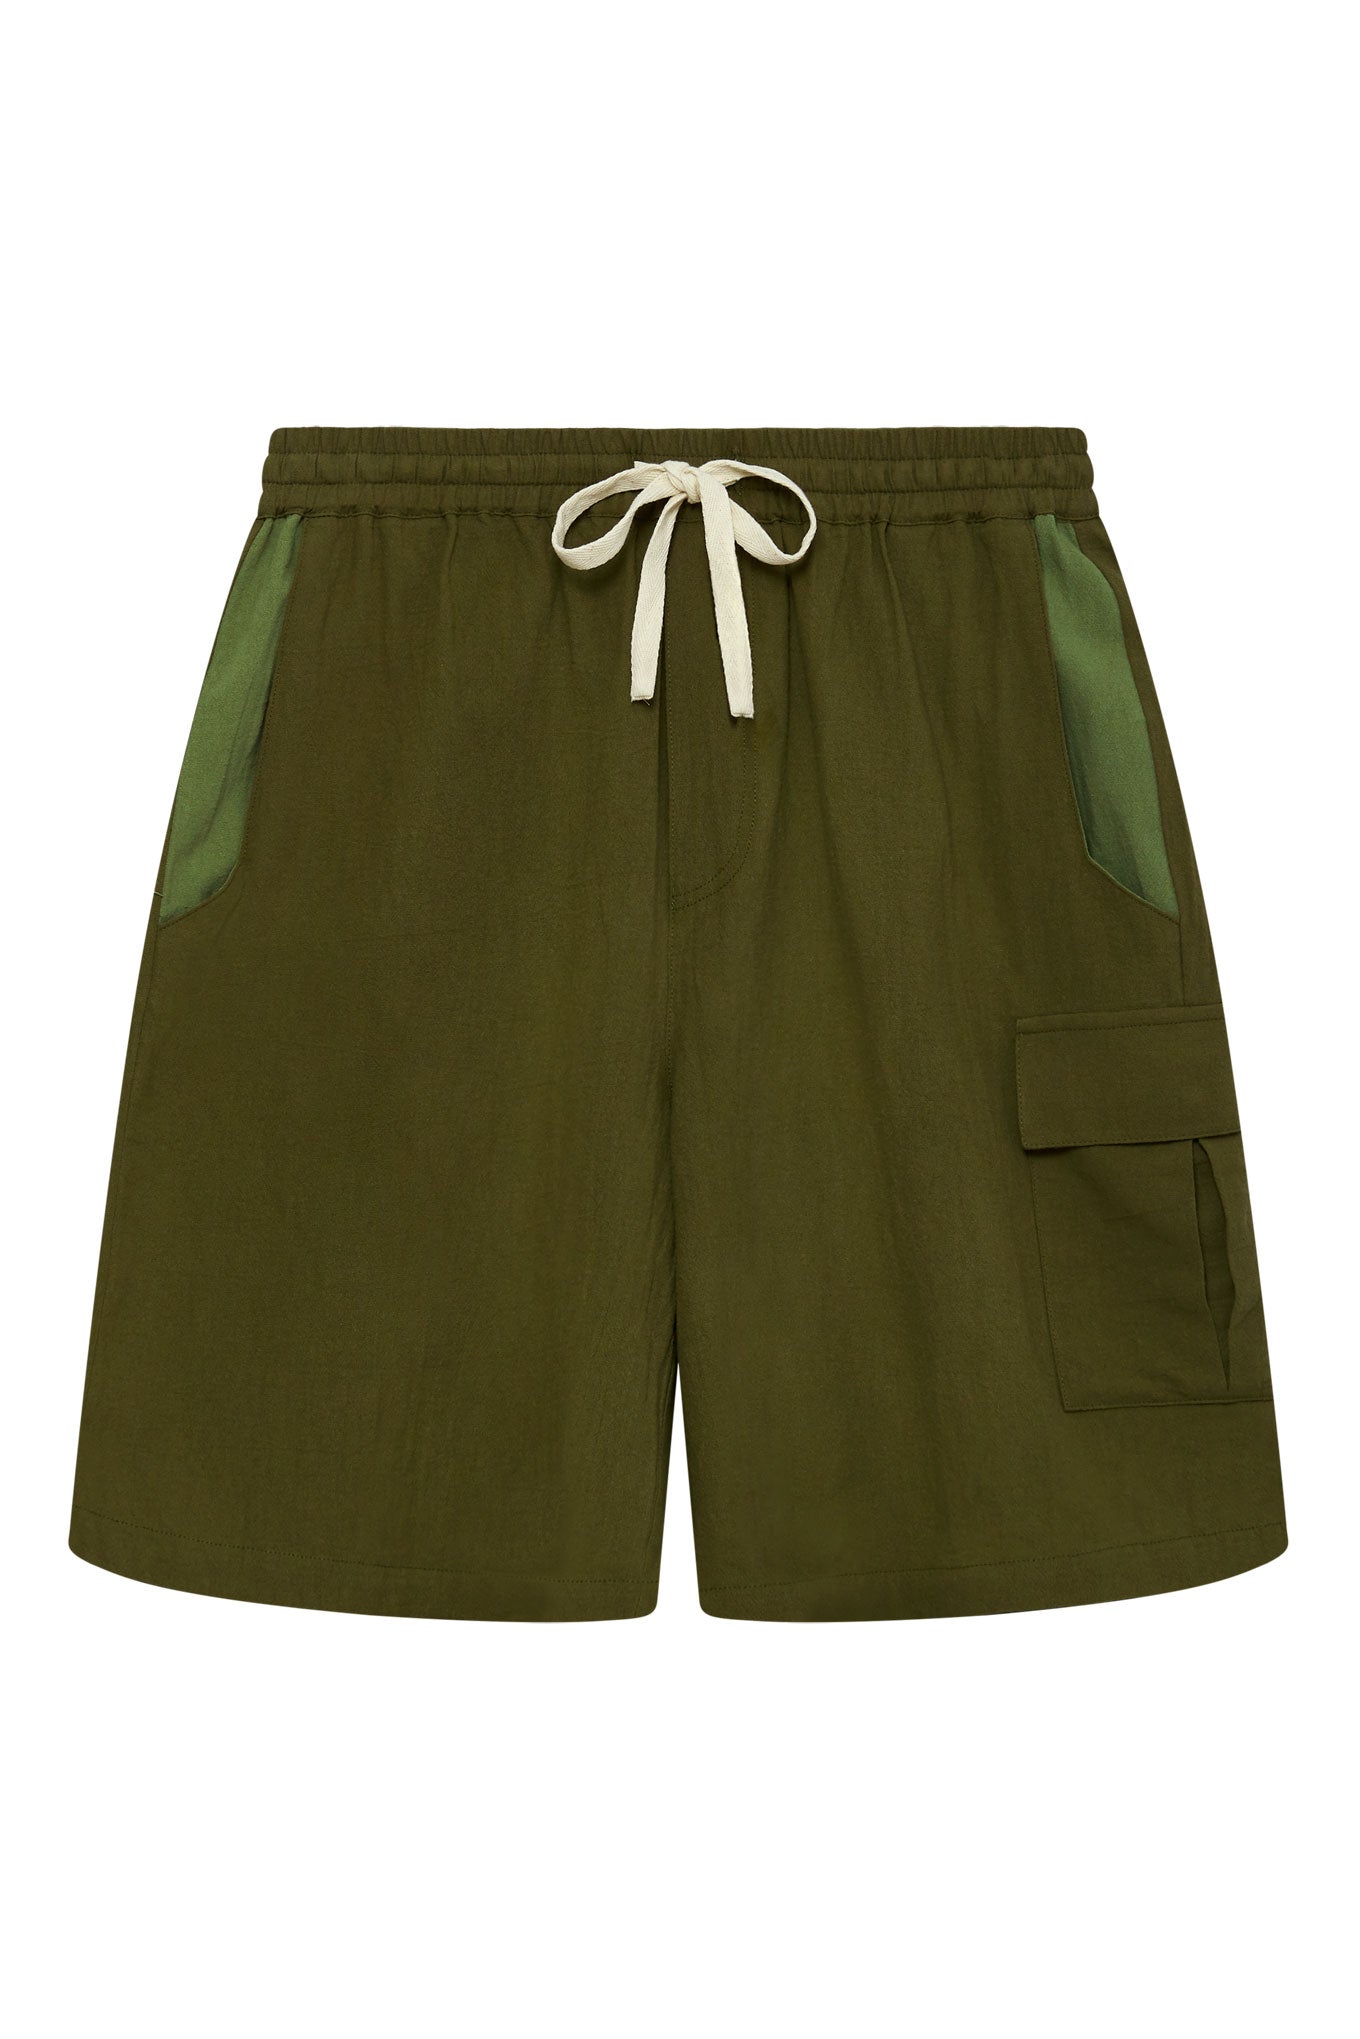 Grüne kurze Patchwork-Hosen Jasper aus 100% Baumwolle von Komodo